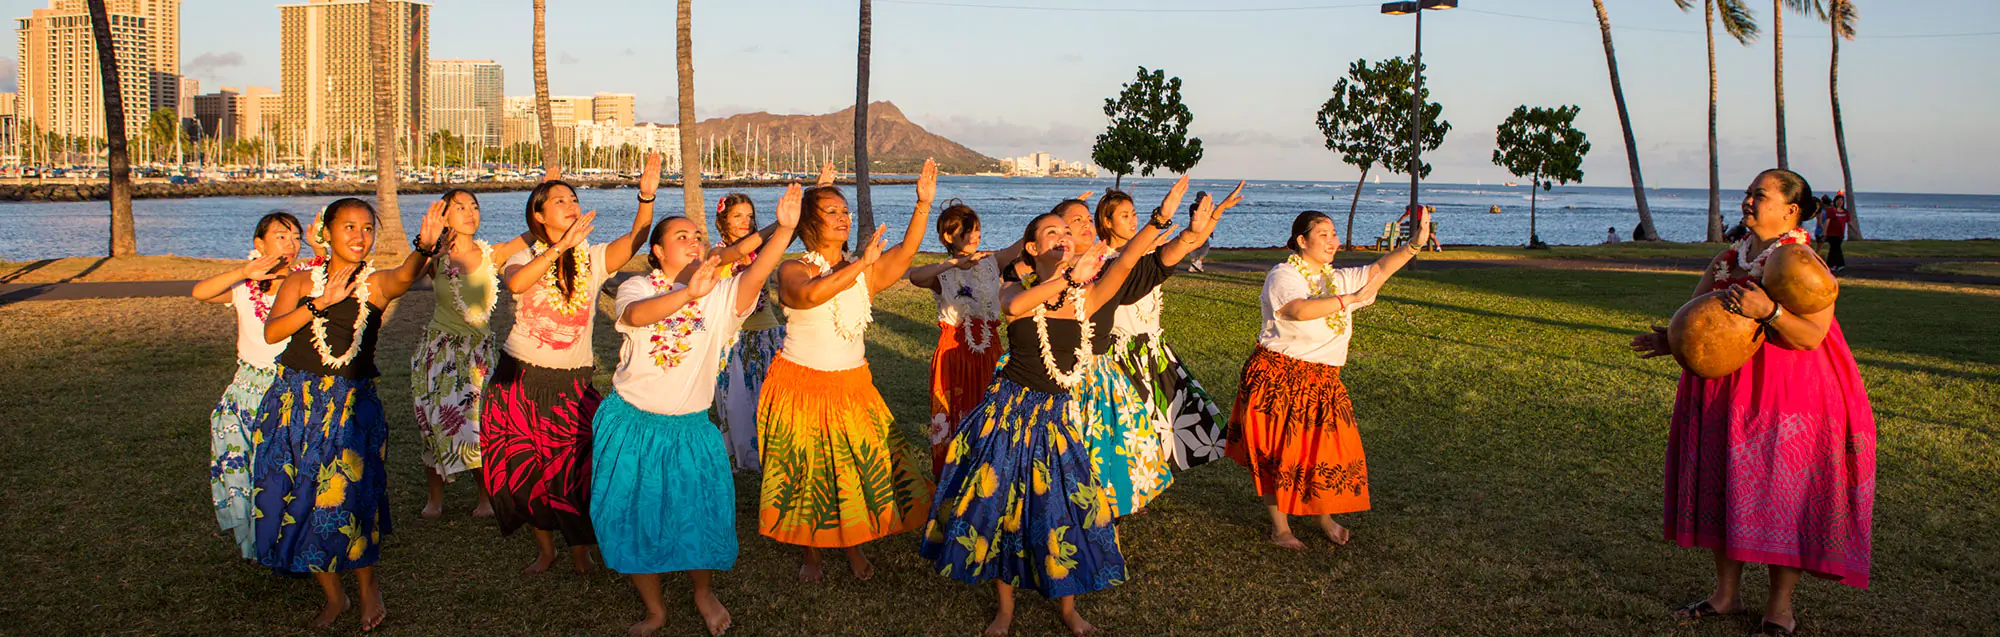 Cursos y precios de Global Village Honolulu